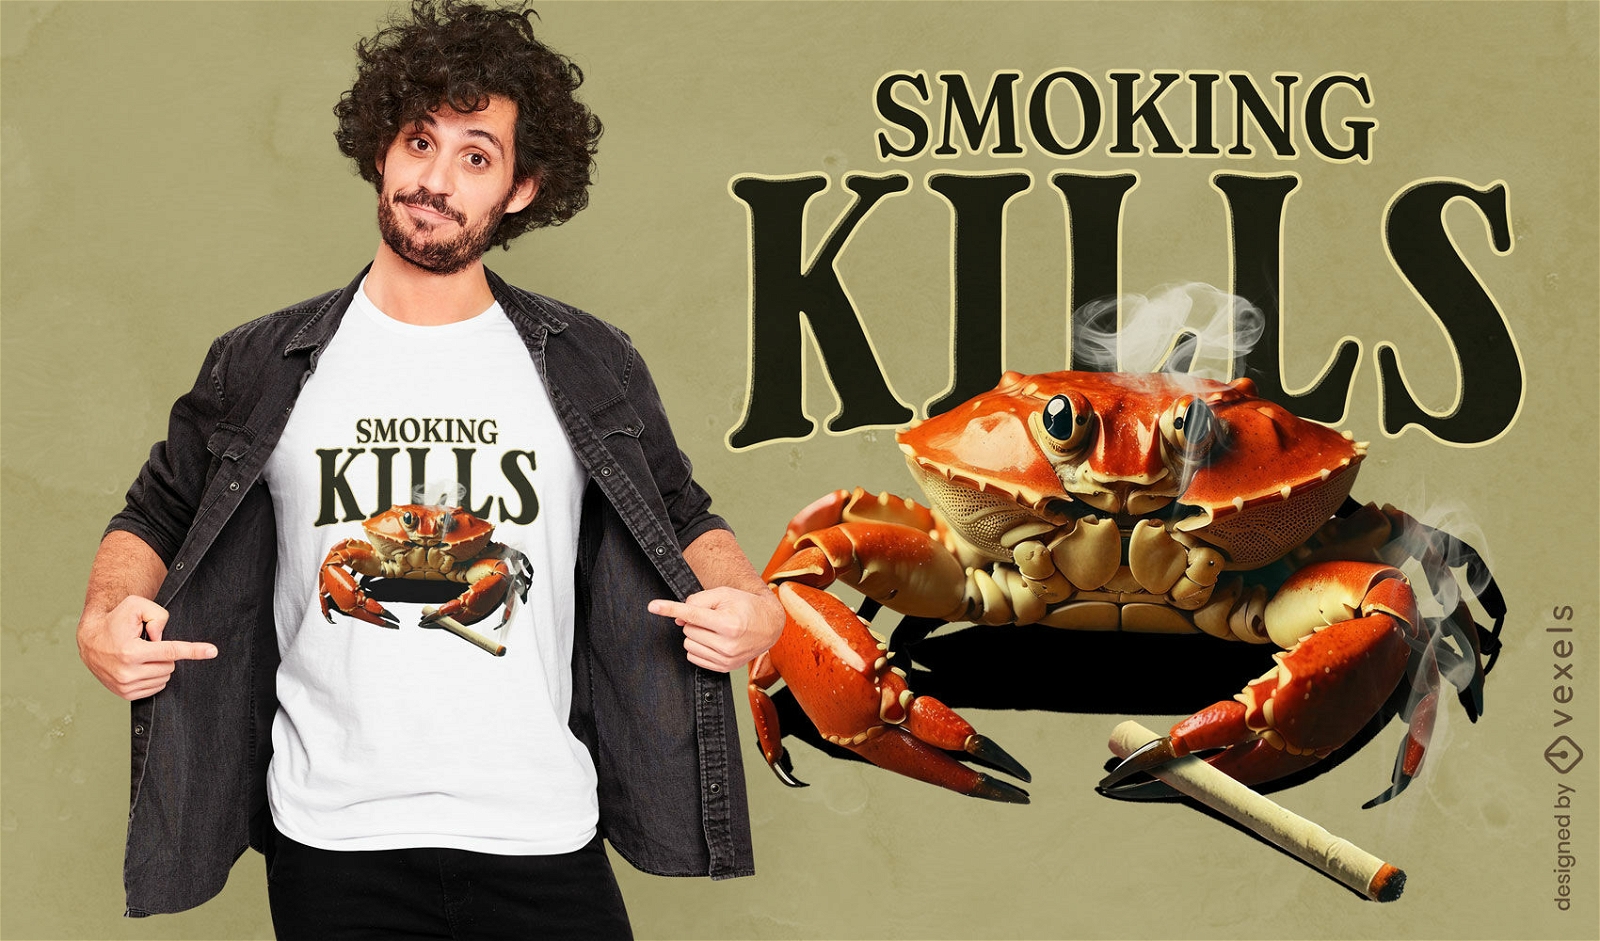 Sarcastic crab smoking t-shirt design